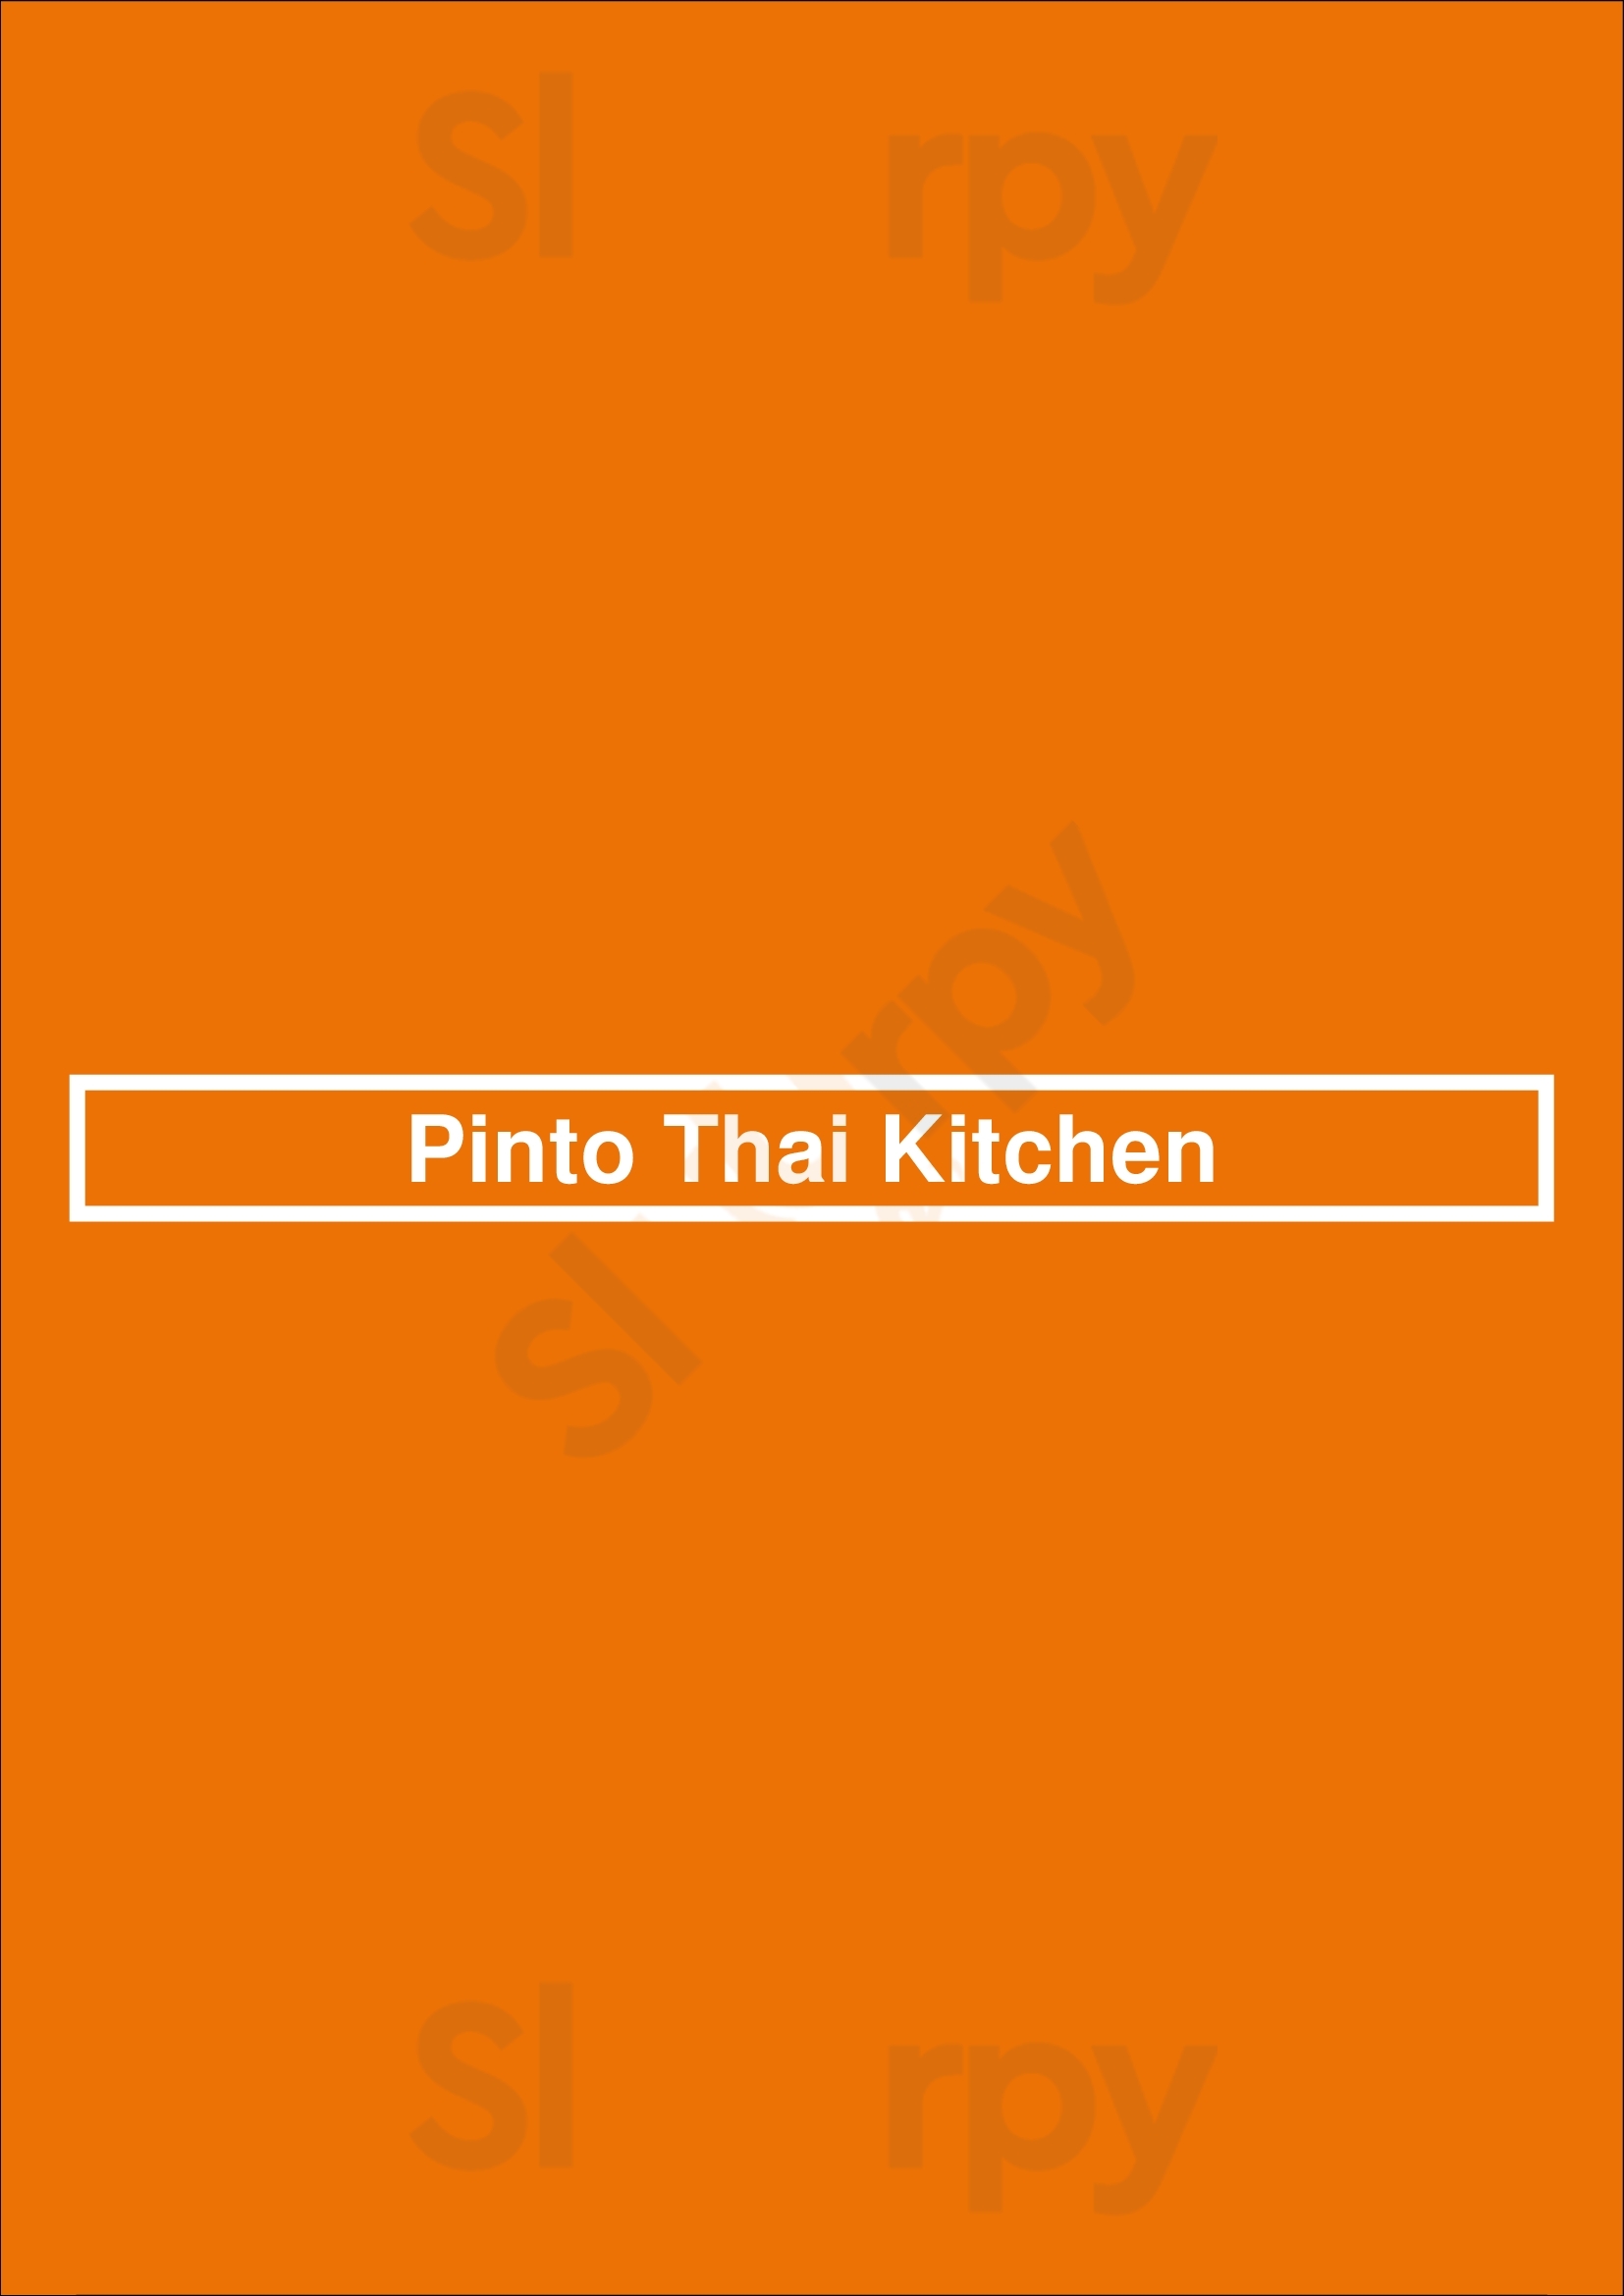 Pinto Thai Kitchen Portland Menu - 1